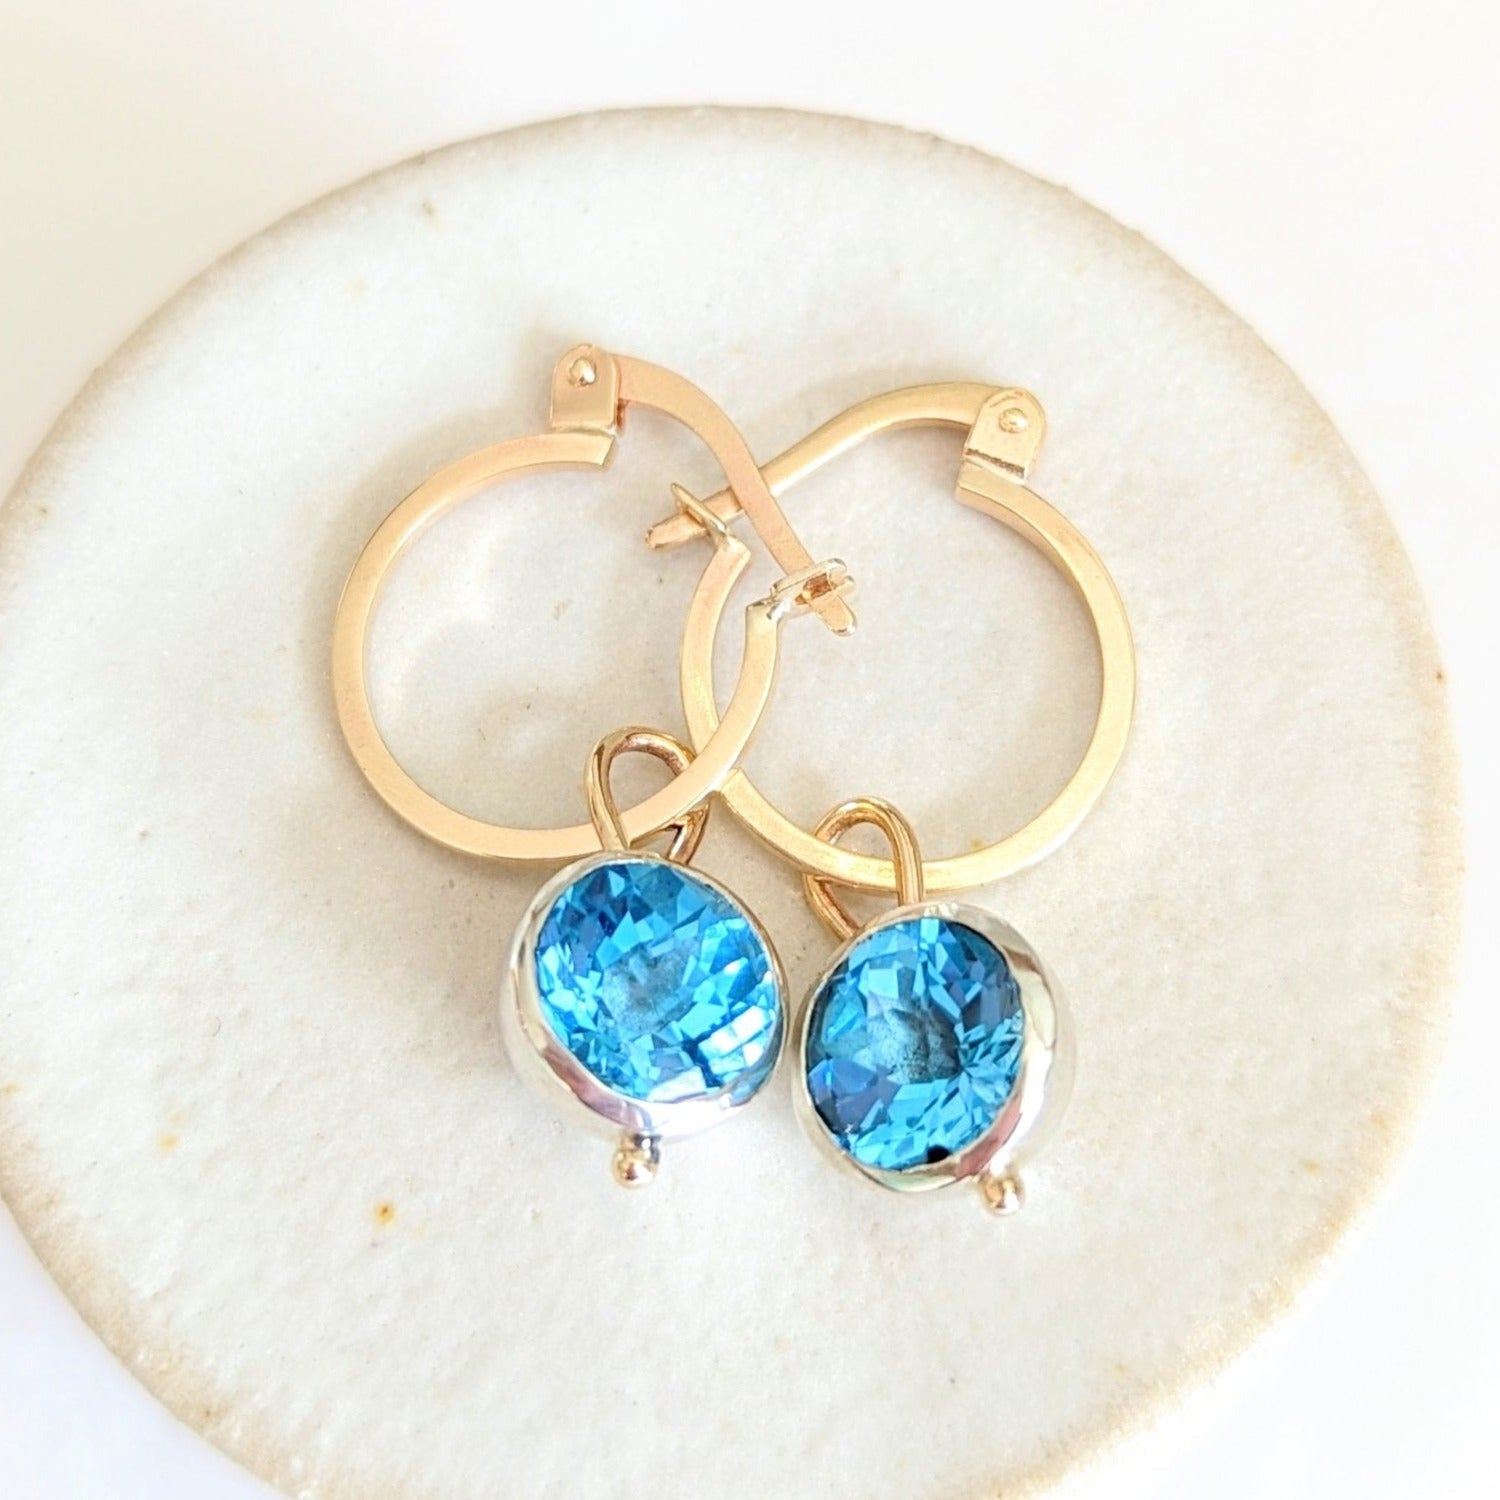 Gold Swiss Blue Topaz Charm Hoop Earrings - Ocean Collection by Booblinka Jewellery